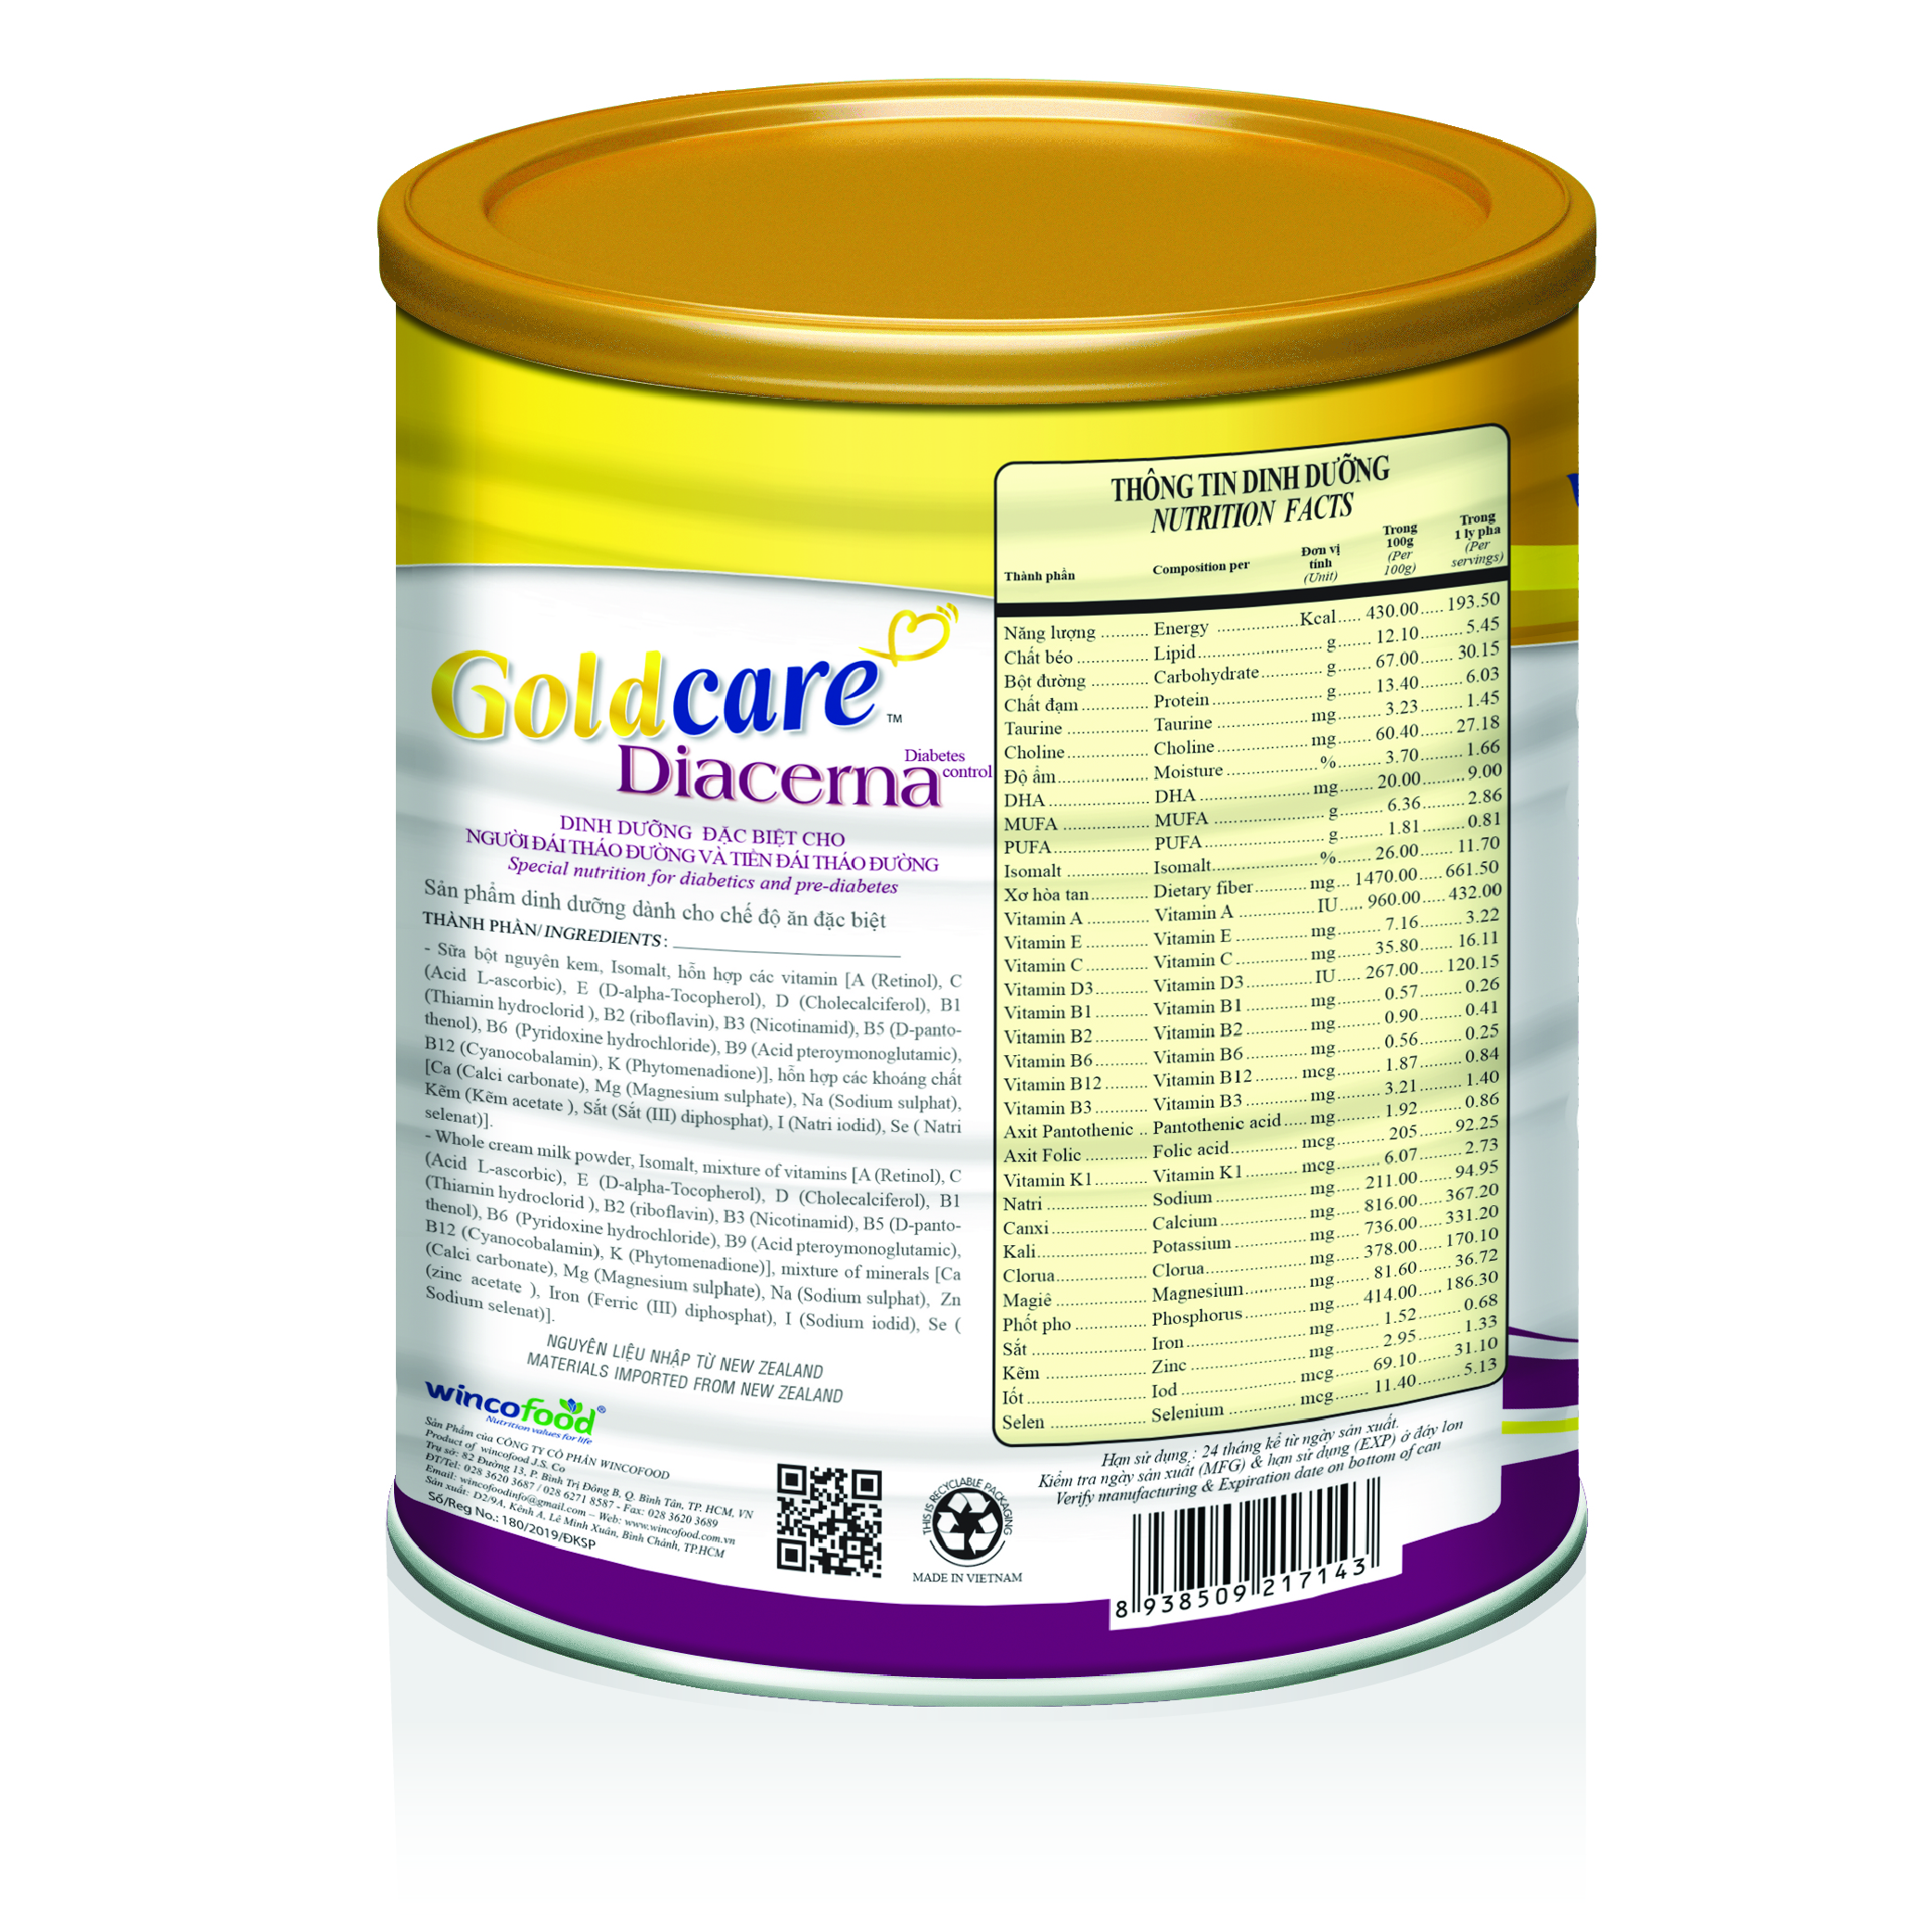 Sữa bột Wincofood Goldcare Diacerna 400g: dinh dưỡng đặc biệt dành cho người đái tháo đường và tiền đái tháo đường giúp ổn định đường huyết.